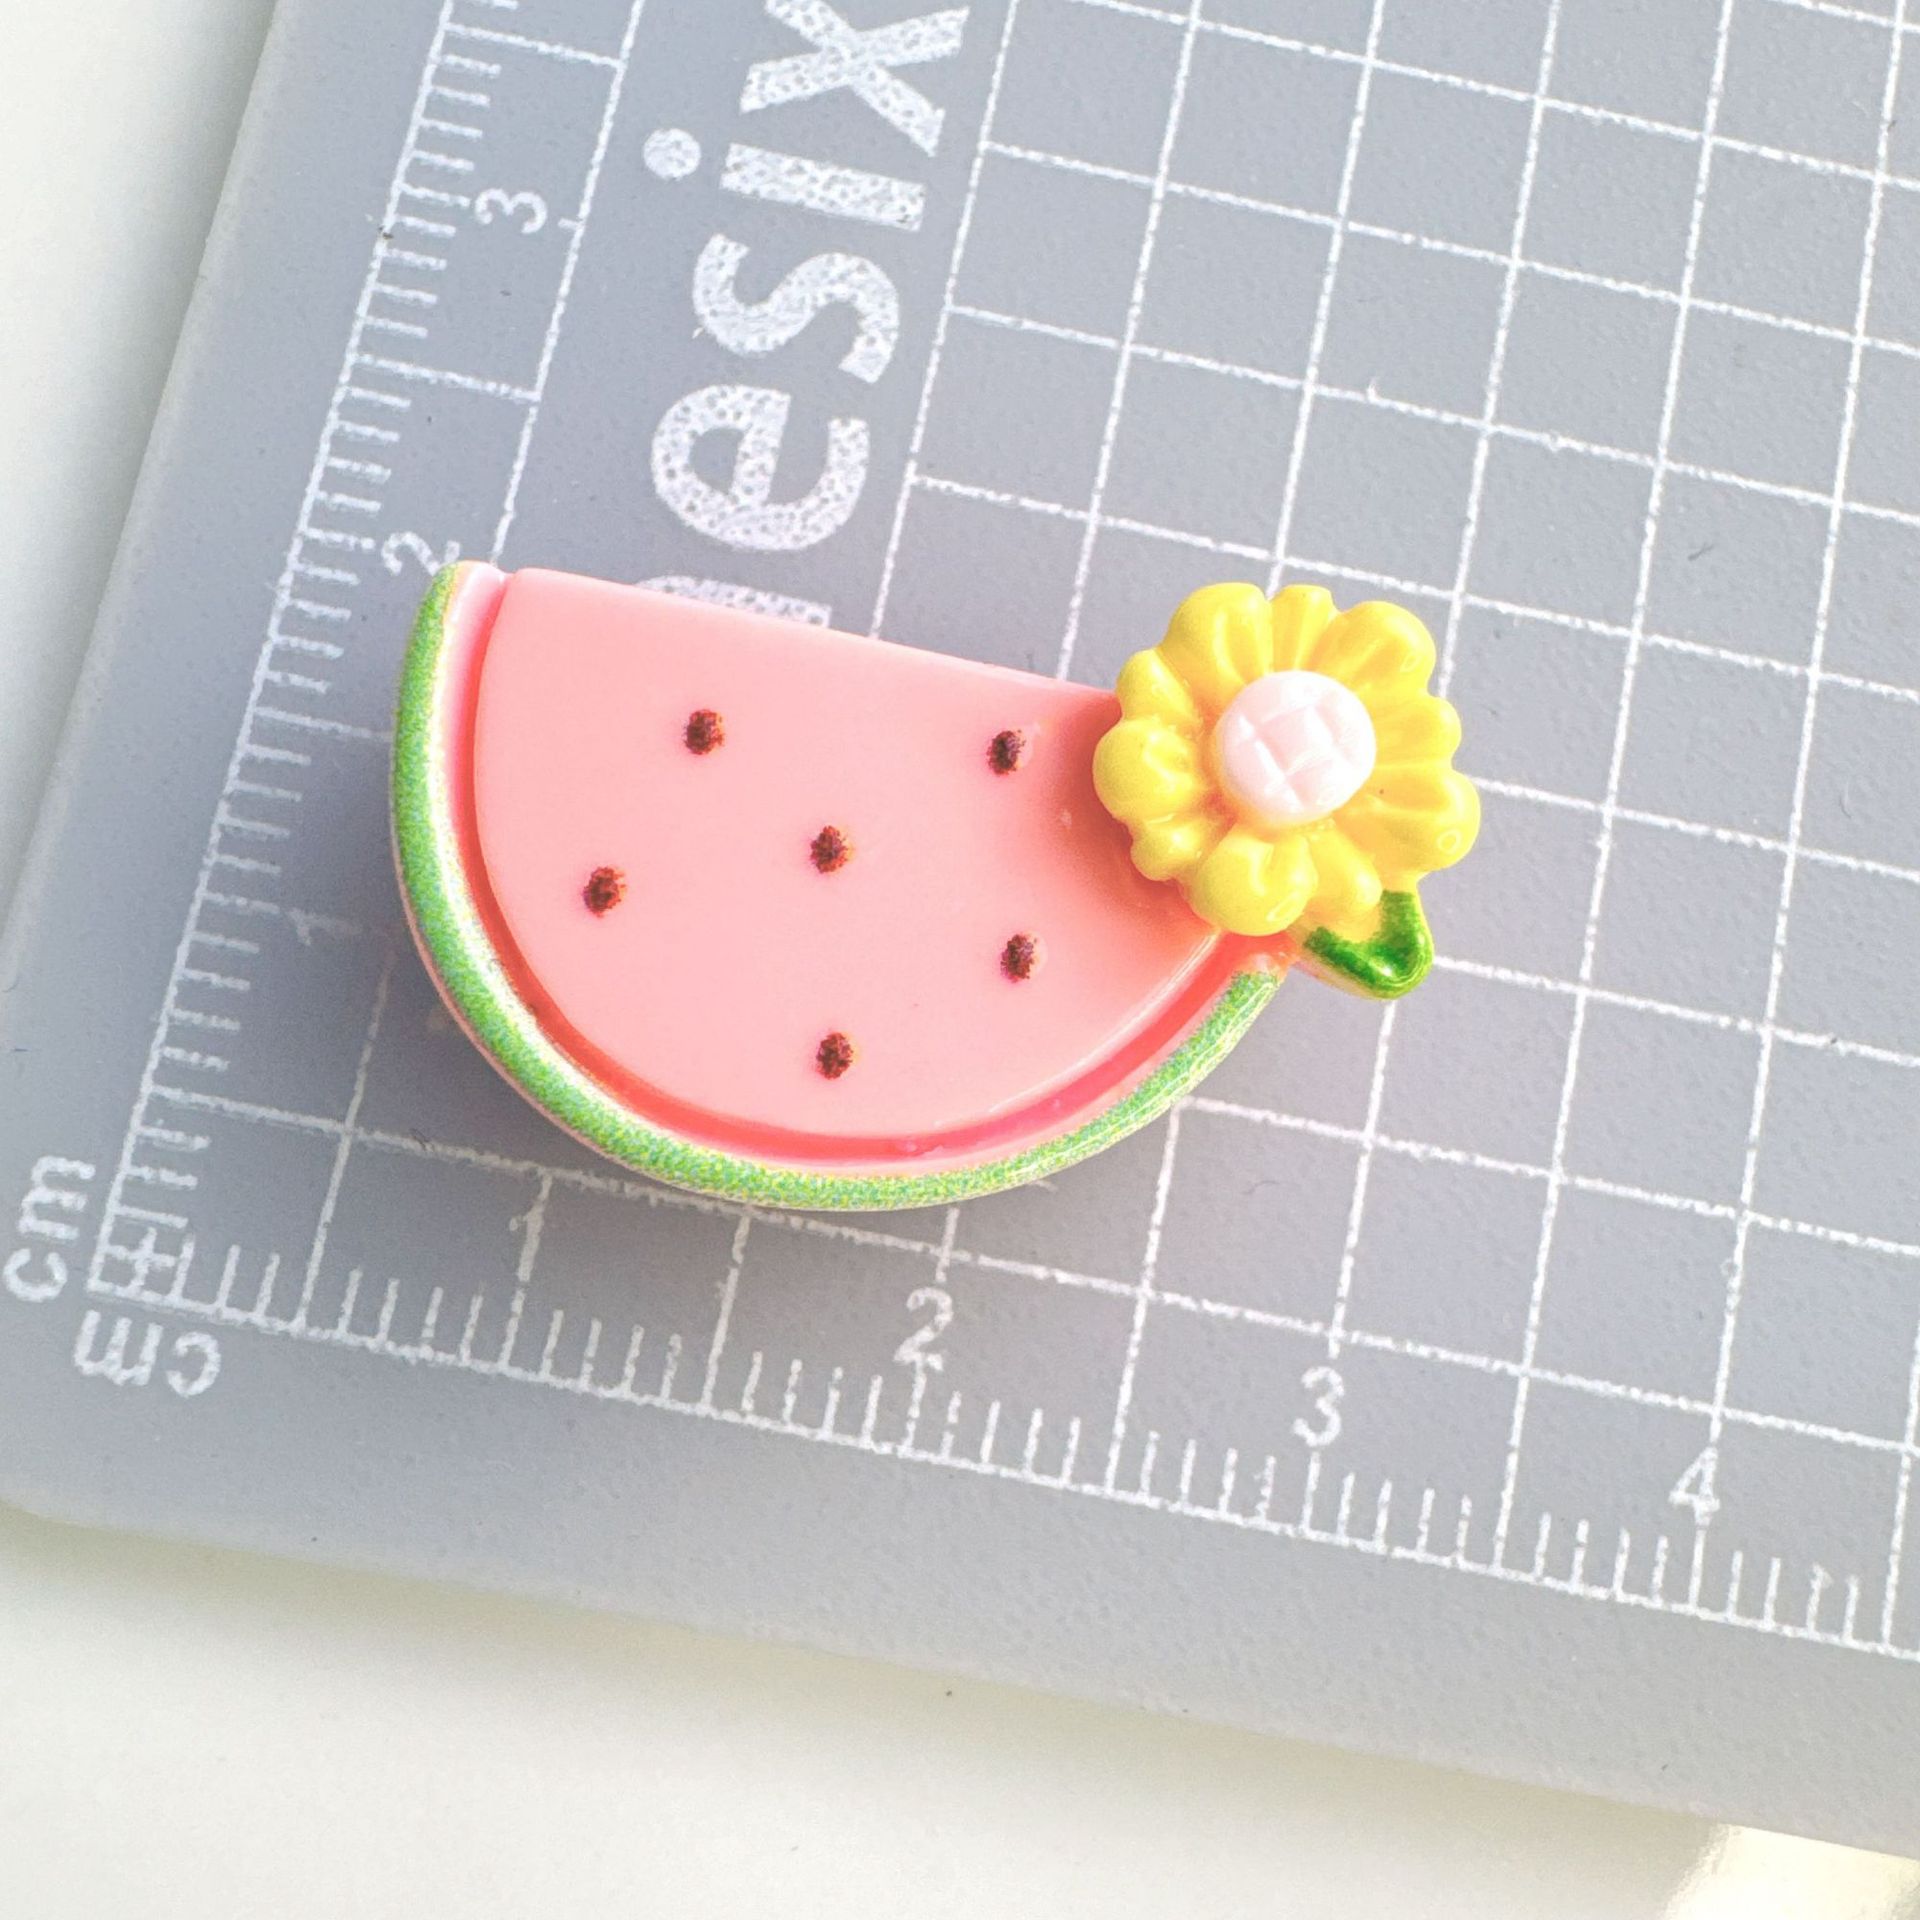 Watermelon-floret fruit